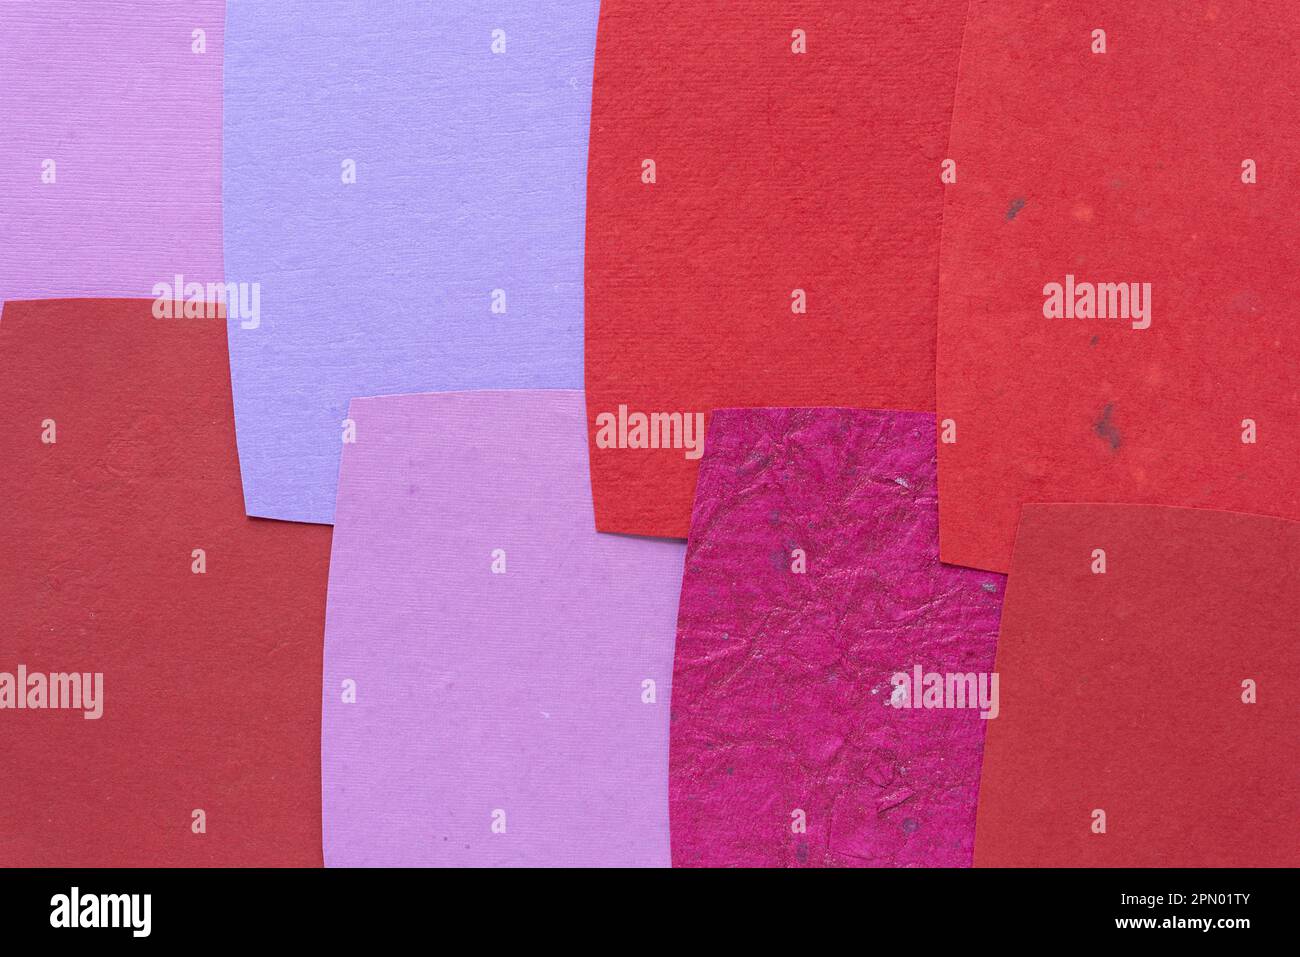 Papierhintergrund mit geschnittenen Papierbögen – einige mit eher rauer Textur – überlappend angeordnet – warme Farbpalette Stockfoto